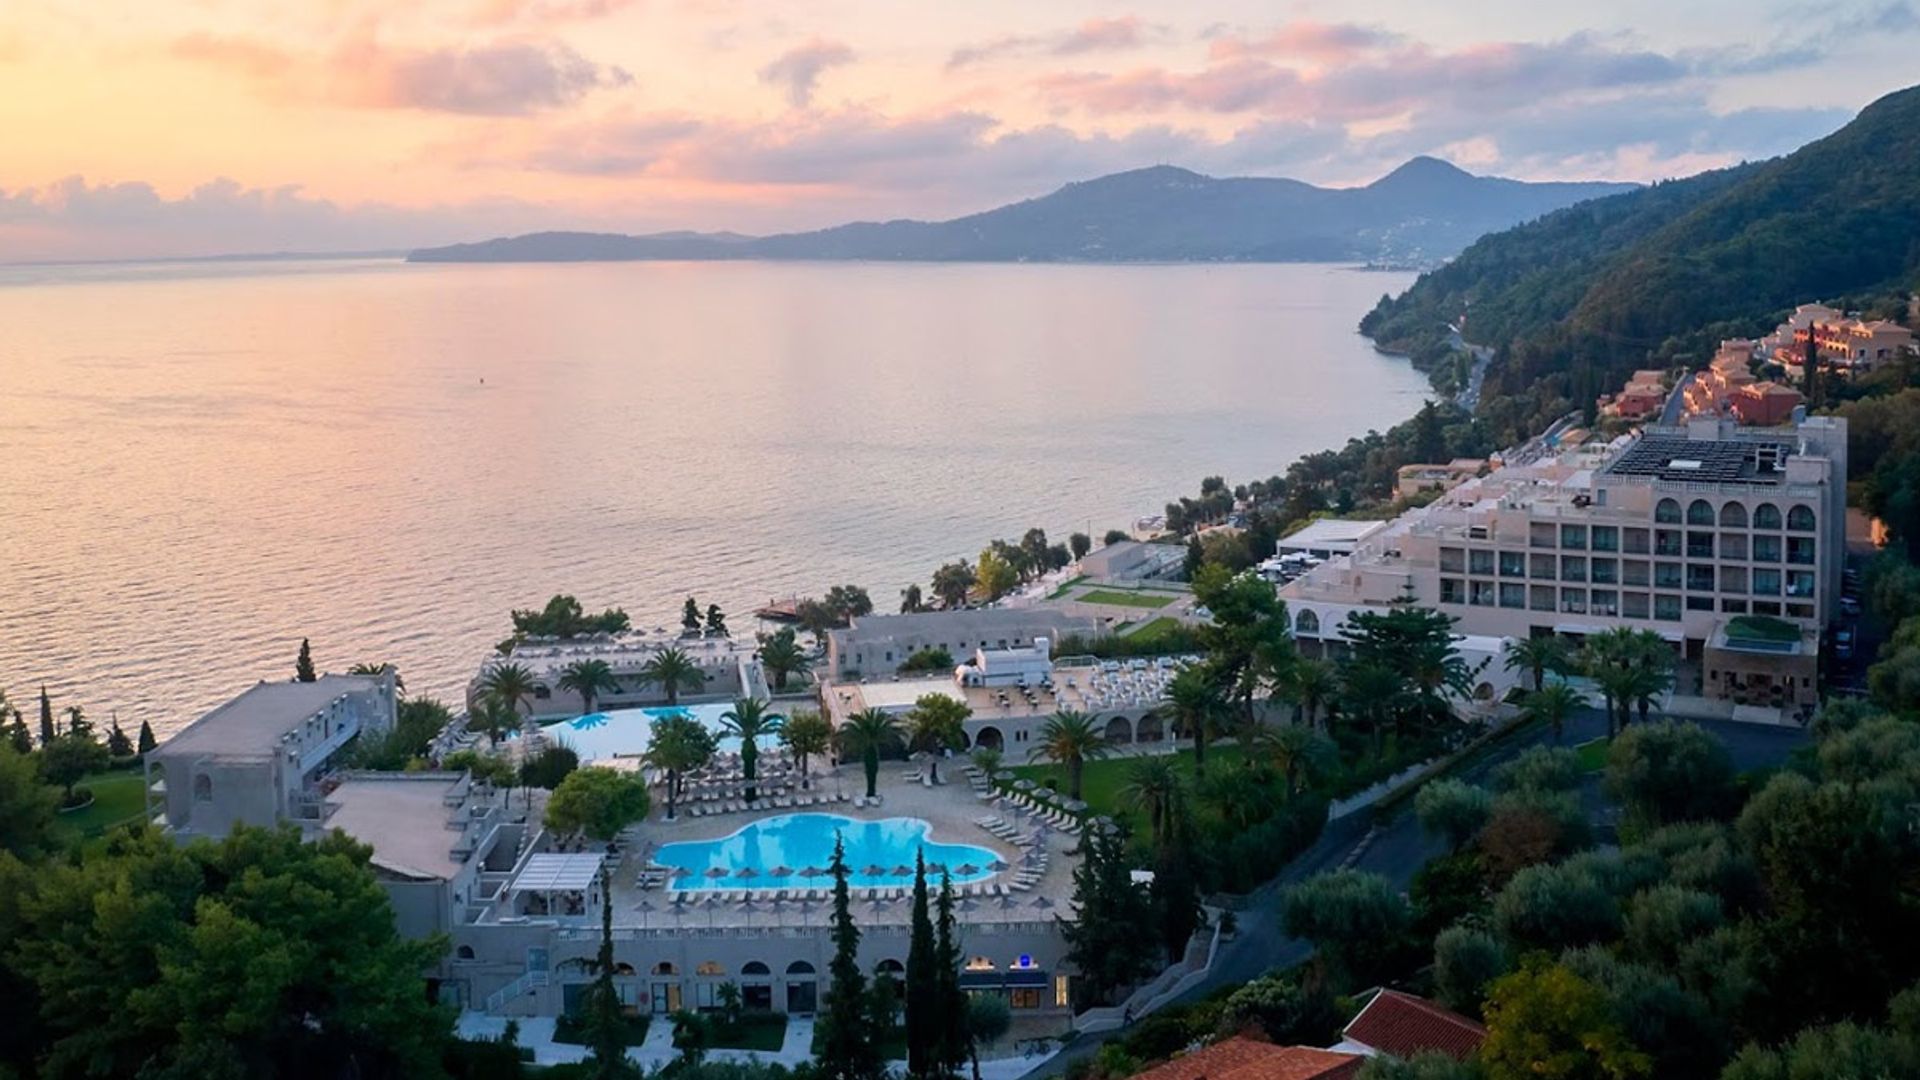 MarBella Corfu hotel: where to travel for some winter sun